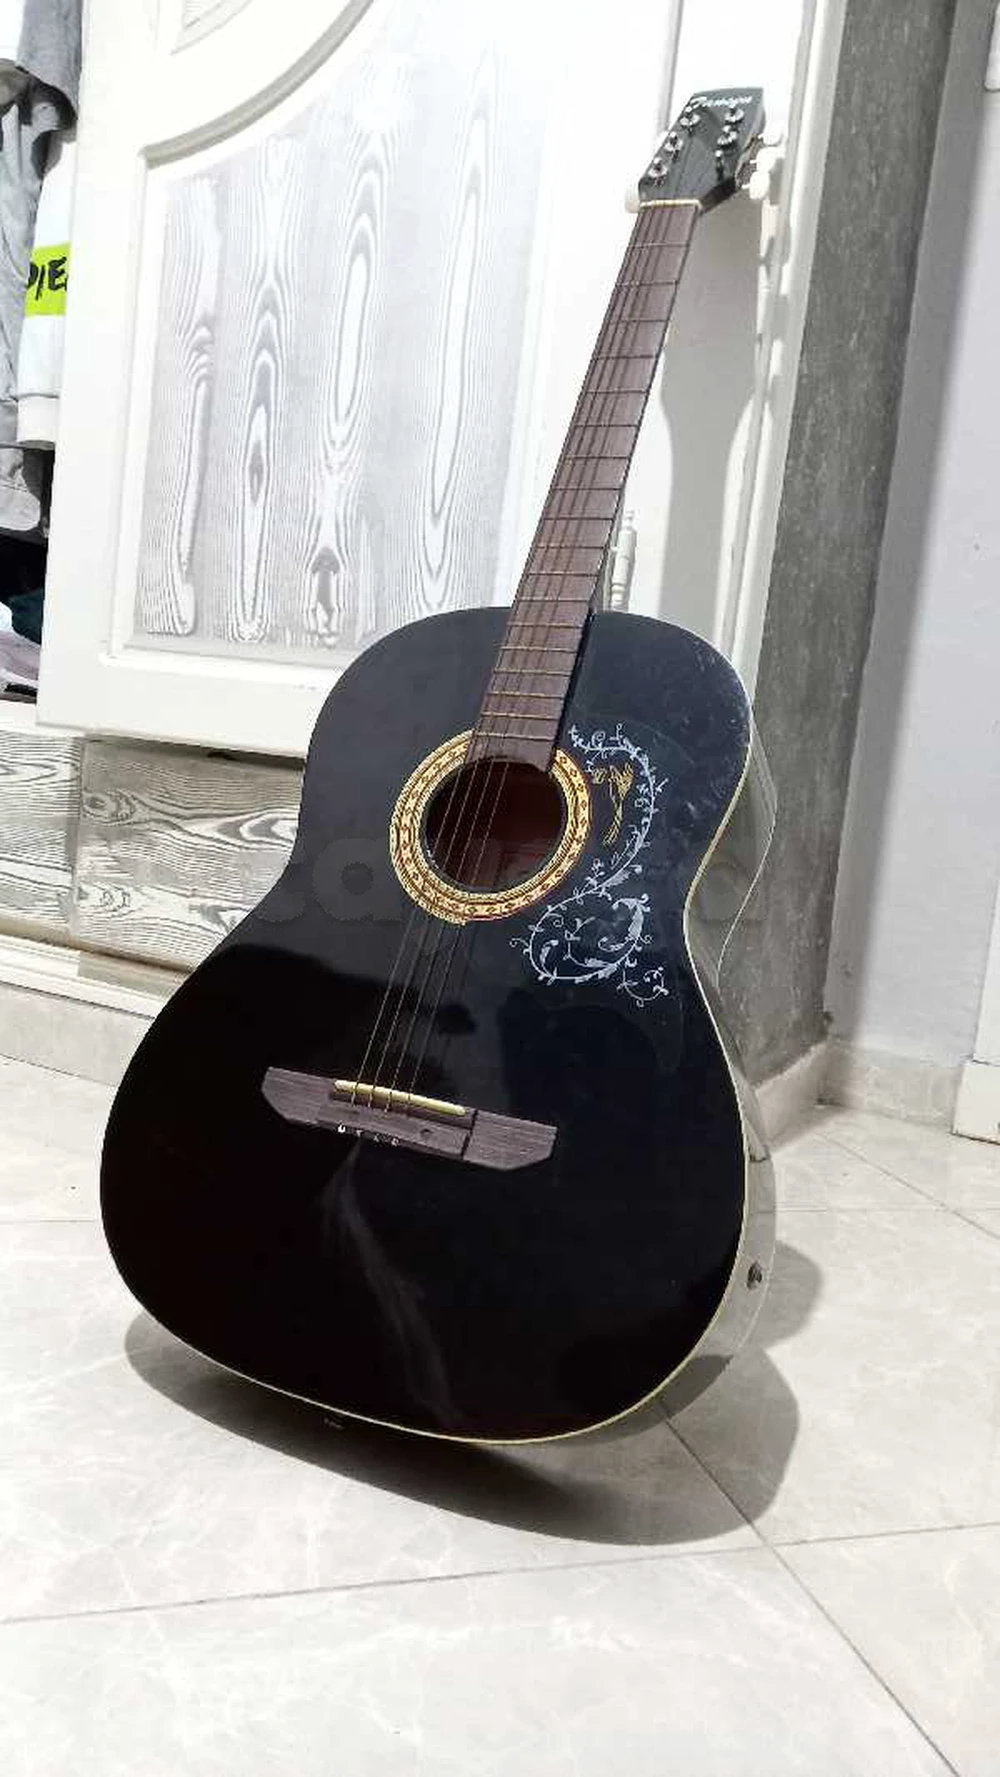 Vente guitare acoustique Tunisie prix imbattable